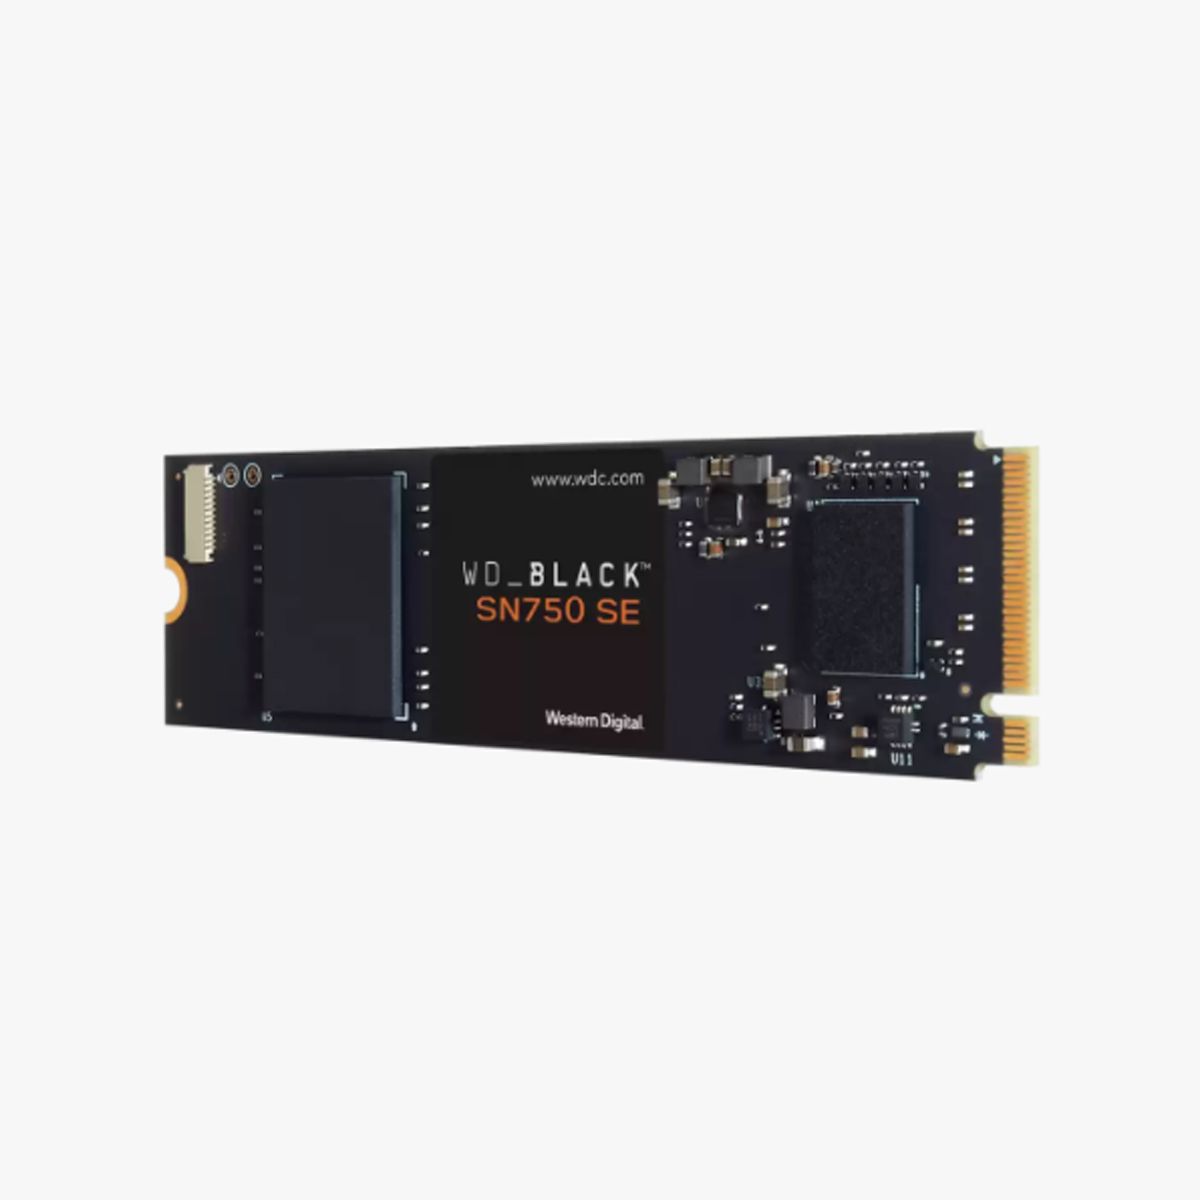 SSD 250G WD BLACK M2 SN750 SE